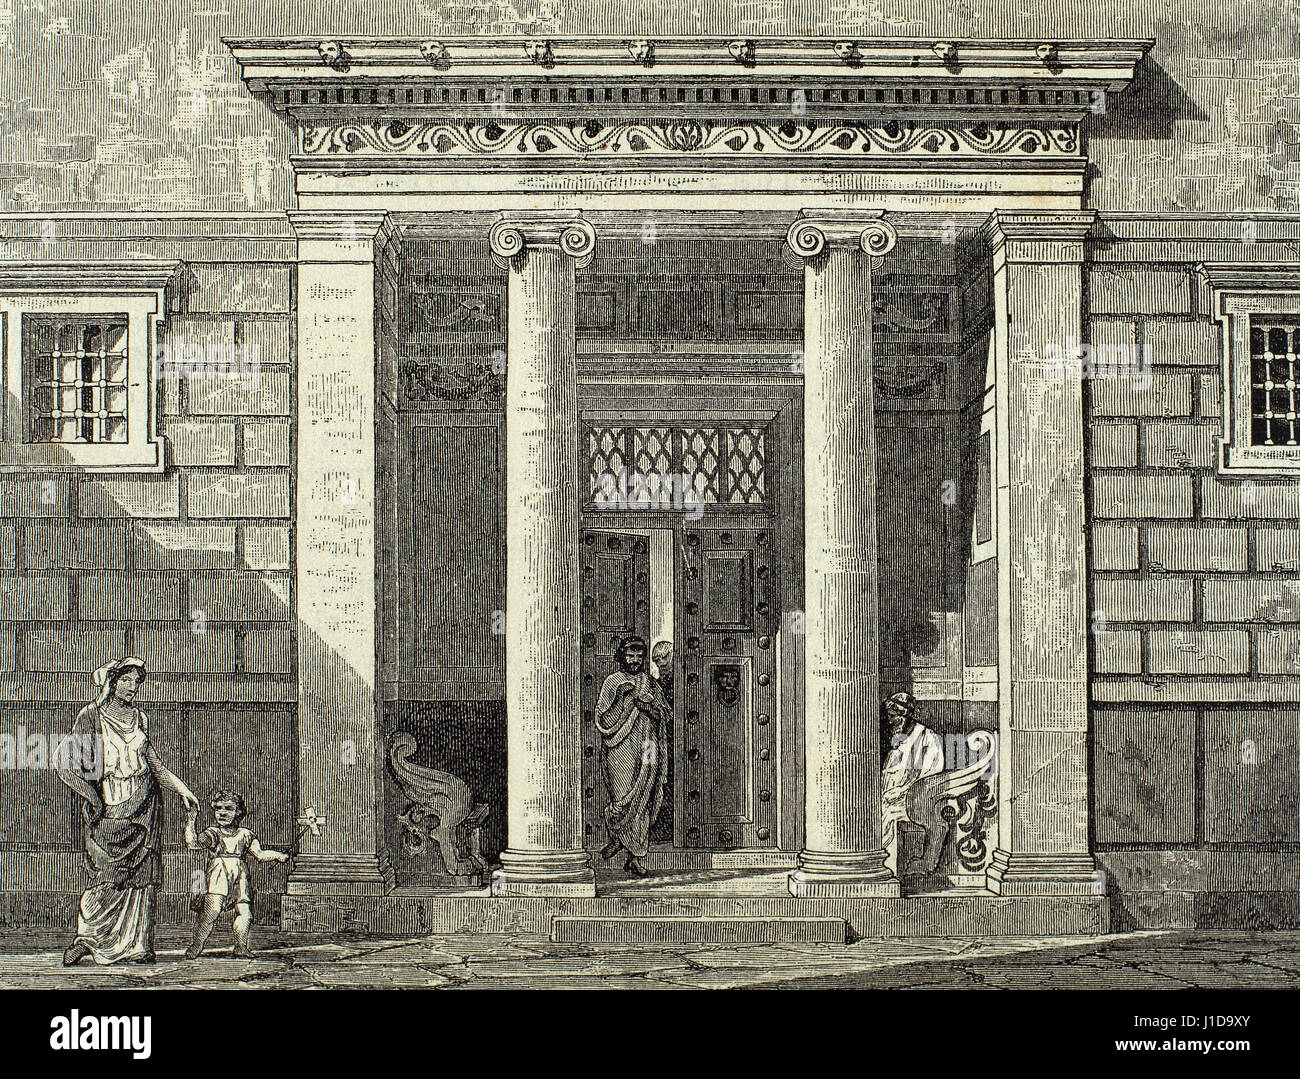 La antigua Grecia. Casa griega clásica. Entrada con columnas jónicas. Grabado. "El Mundo ilustrado", 1880. Foto de stock